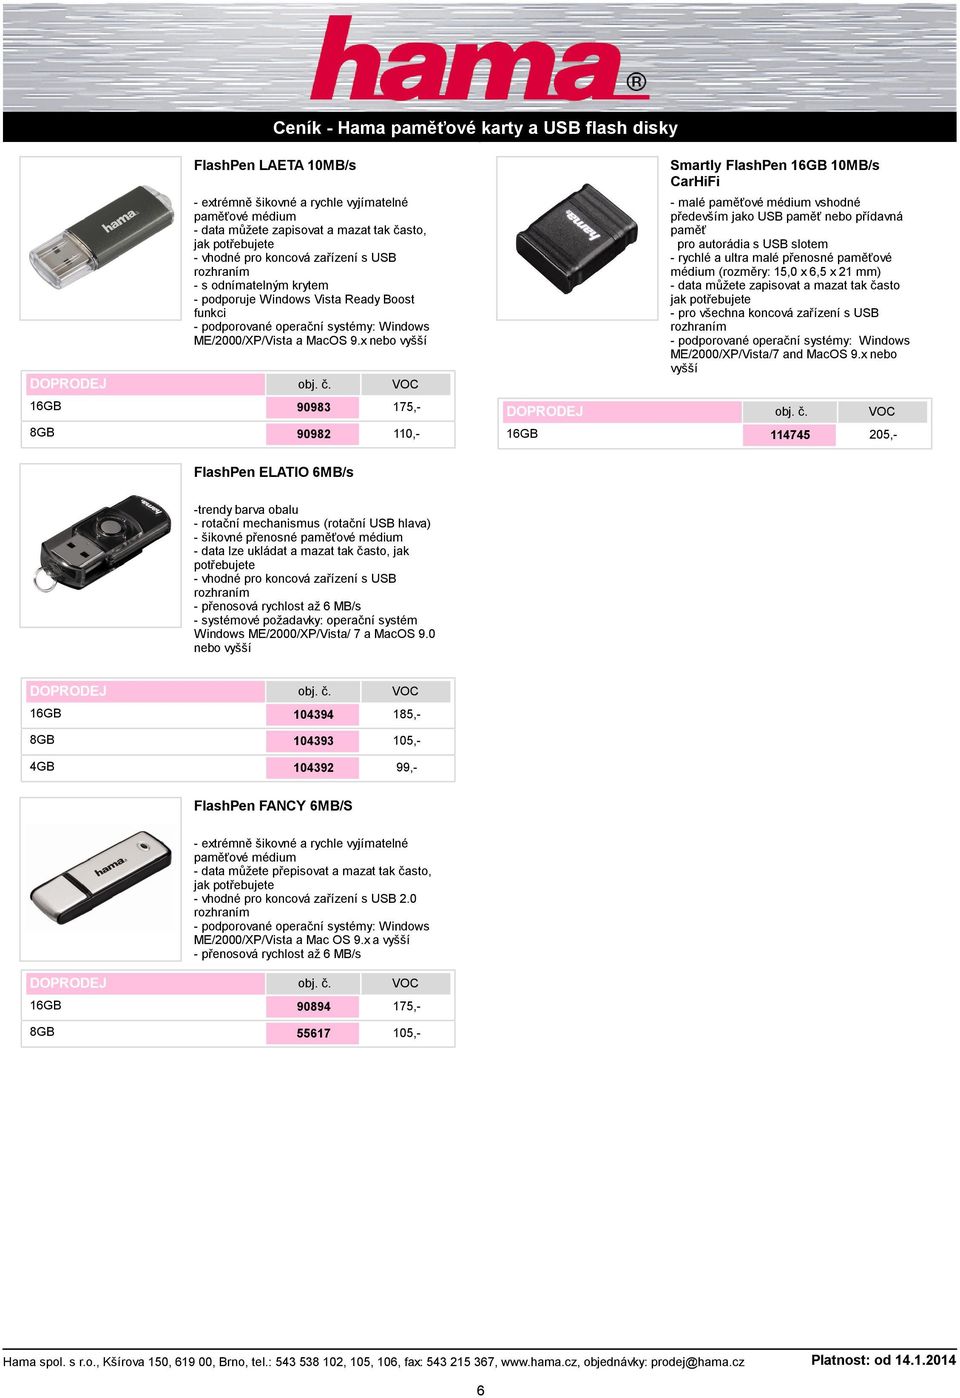 x Smartly FlashPen 10MB/s CarHiFi - malé paměťové médium vshodné především jako USB paměť nebo přídavná paměť pro autorádia s USB slotem - rychlé a ultra malé přenosné paměťové médium (rozměry: 15,0